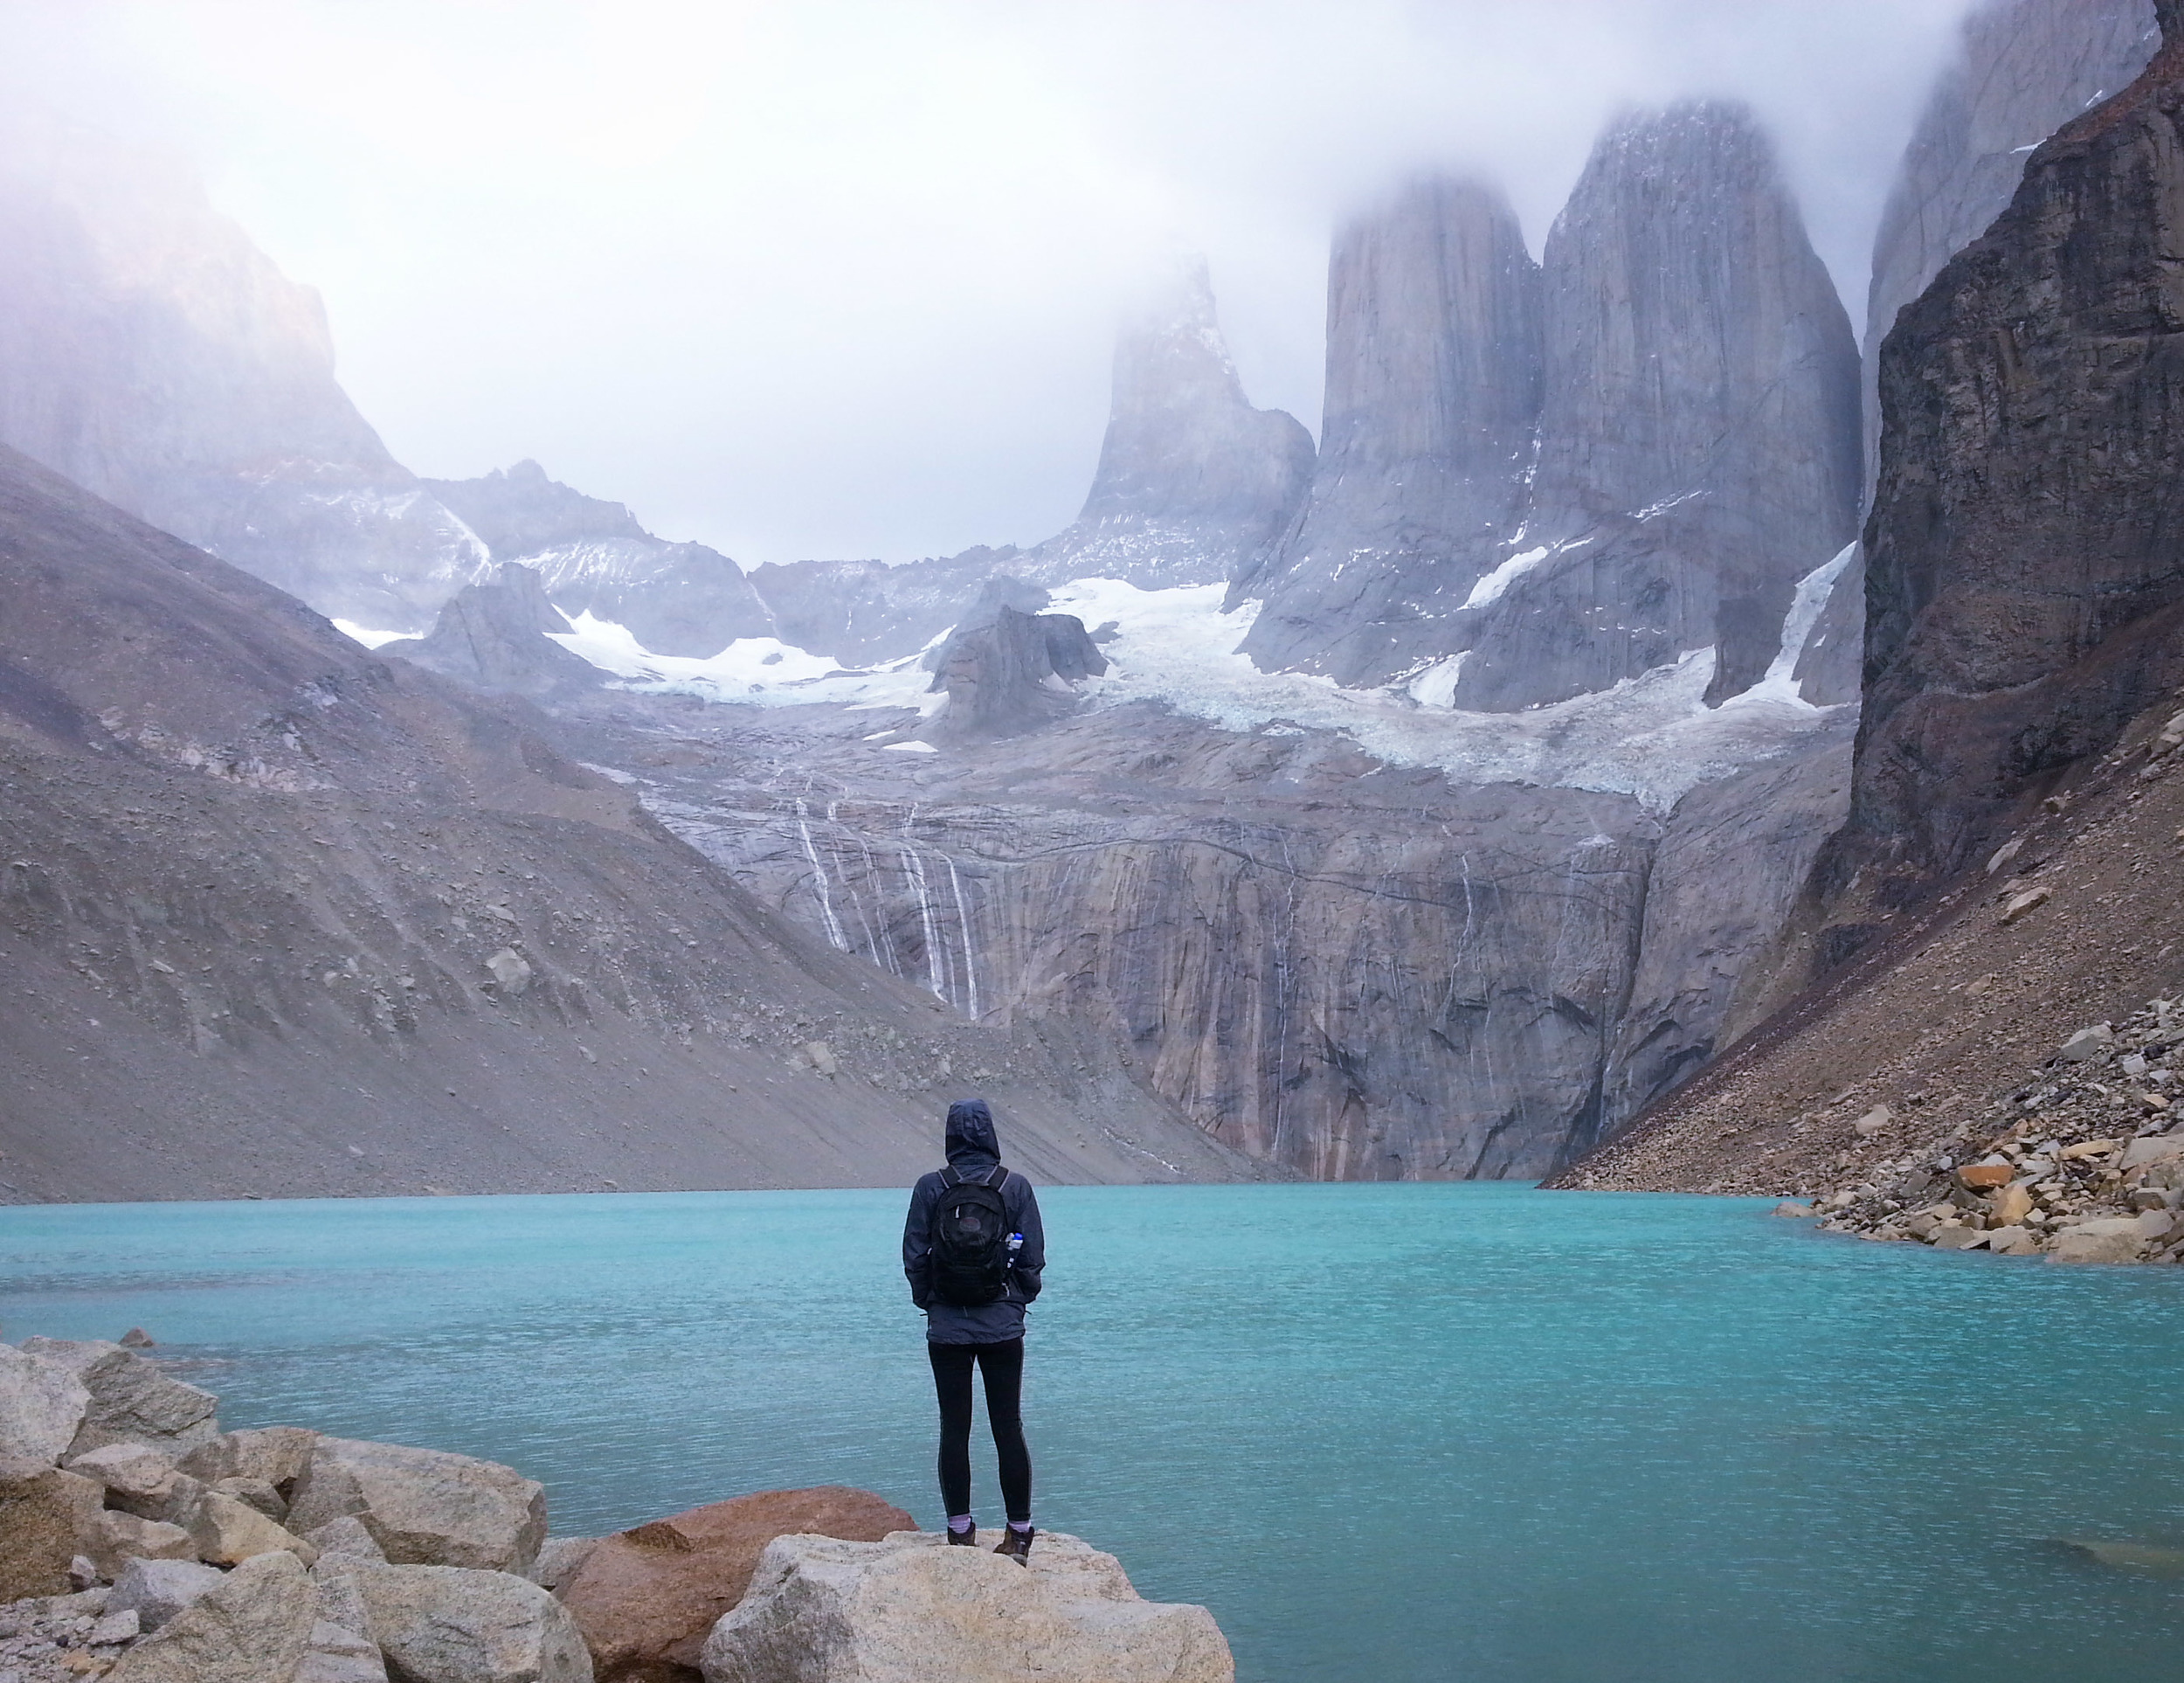 THISWORLDEXISTS - Trekking to Torres del Paine